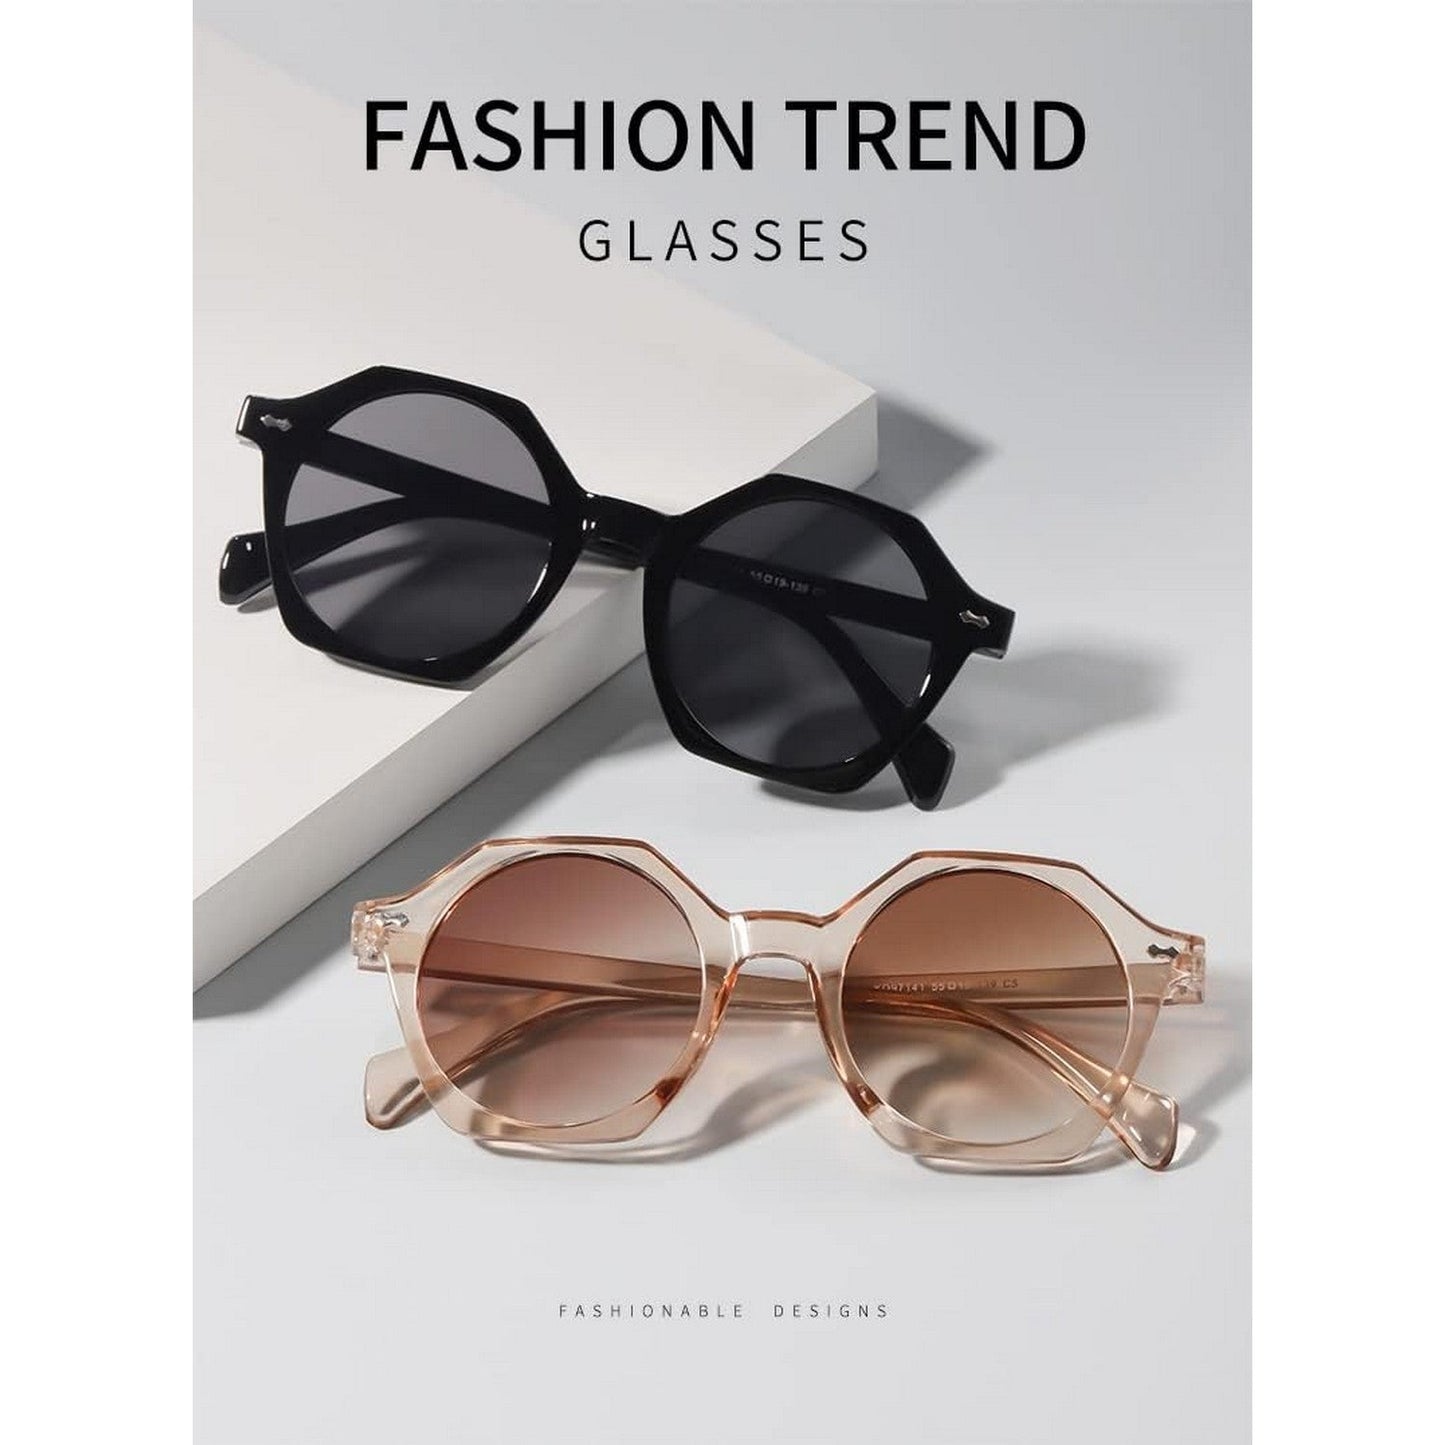 LunaShade Round Hexa Sunglasses for Men and Women Beach Glasses Pink